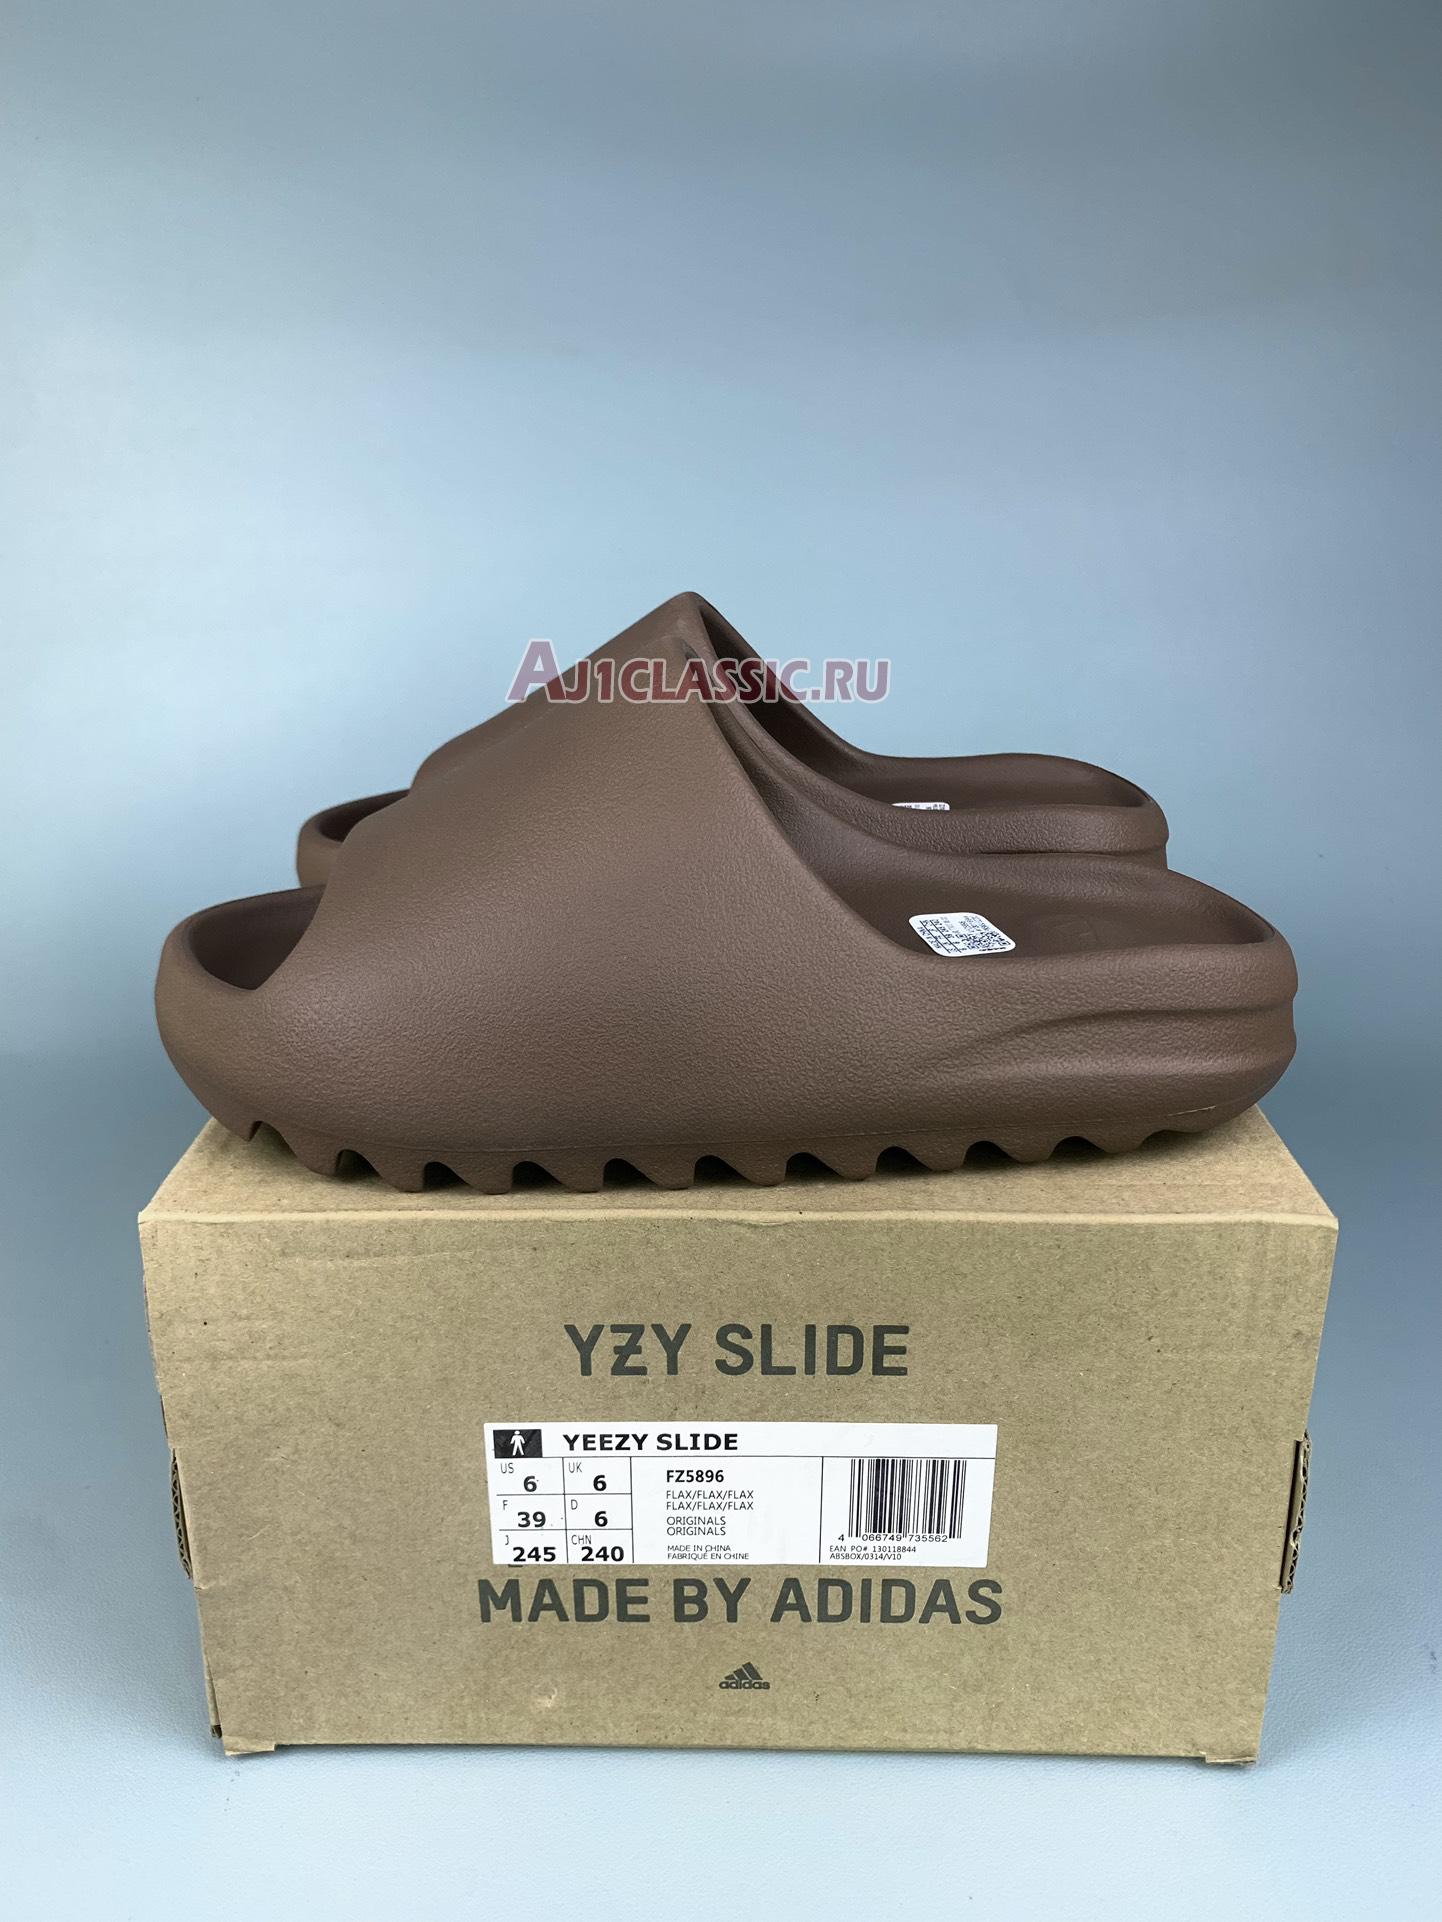 Adidas Yeezy Slide "Flax" FZ5896